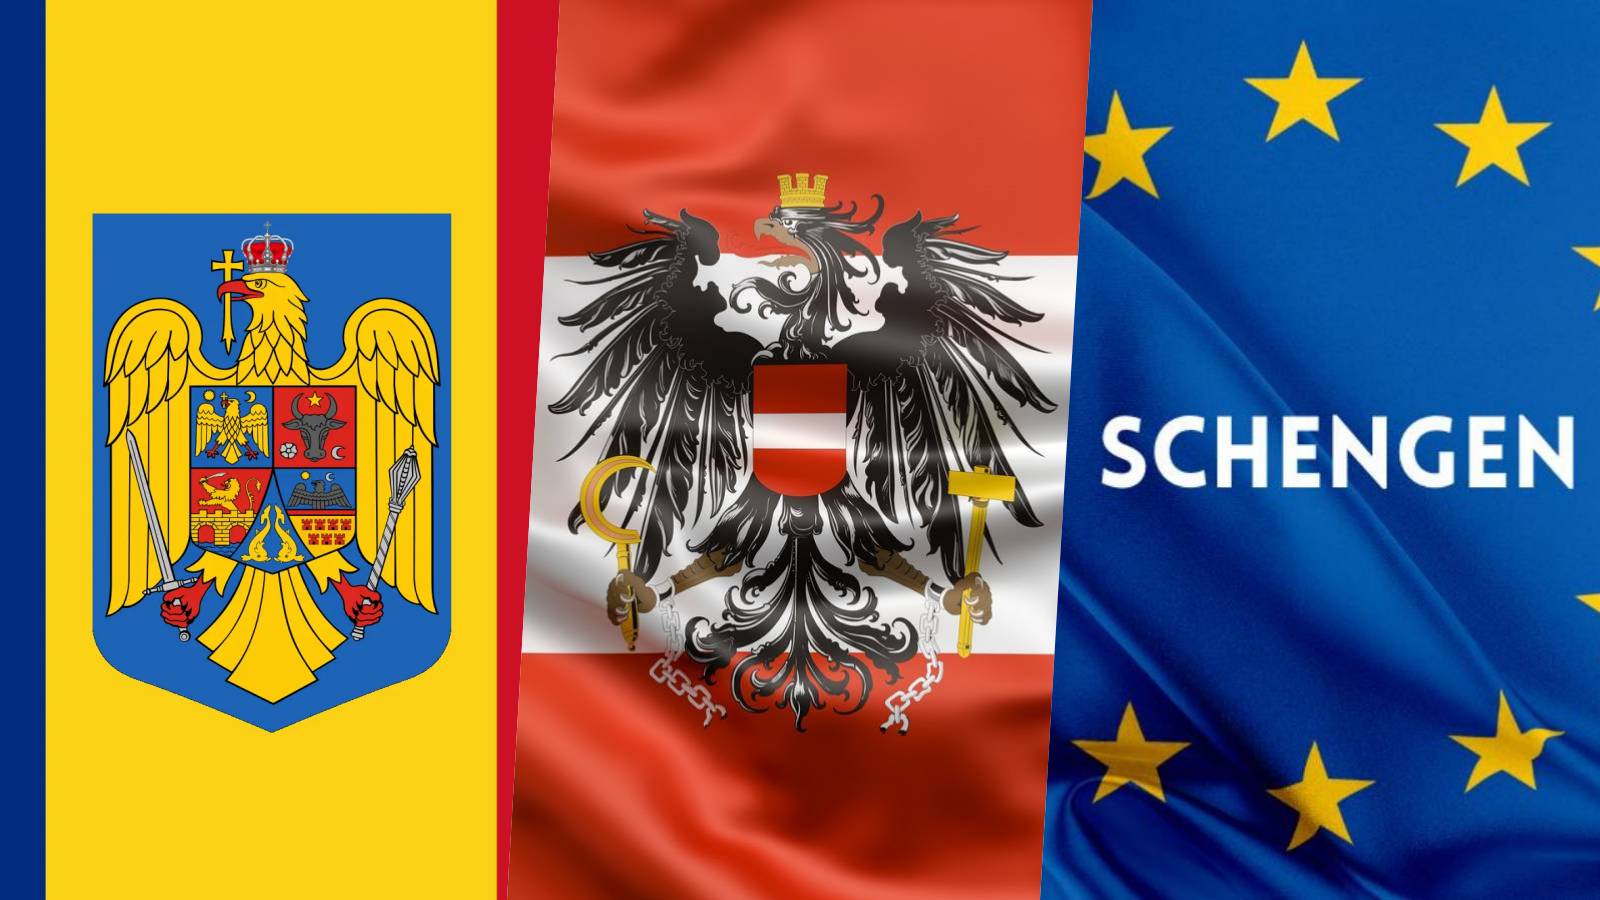 Schengen Importante annuncio ufficiale LAST MINUTE MAGGIO Quando la Romania aderirà